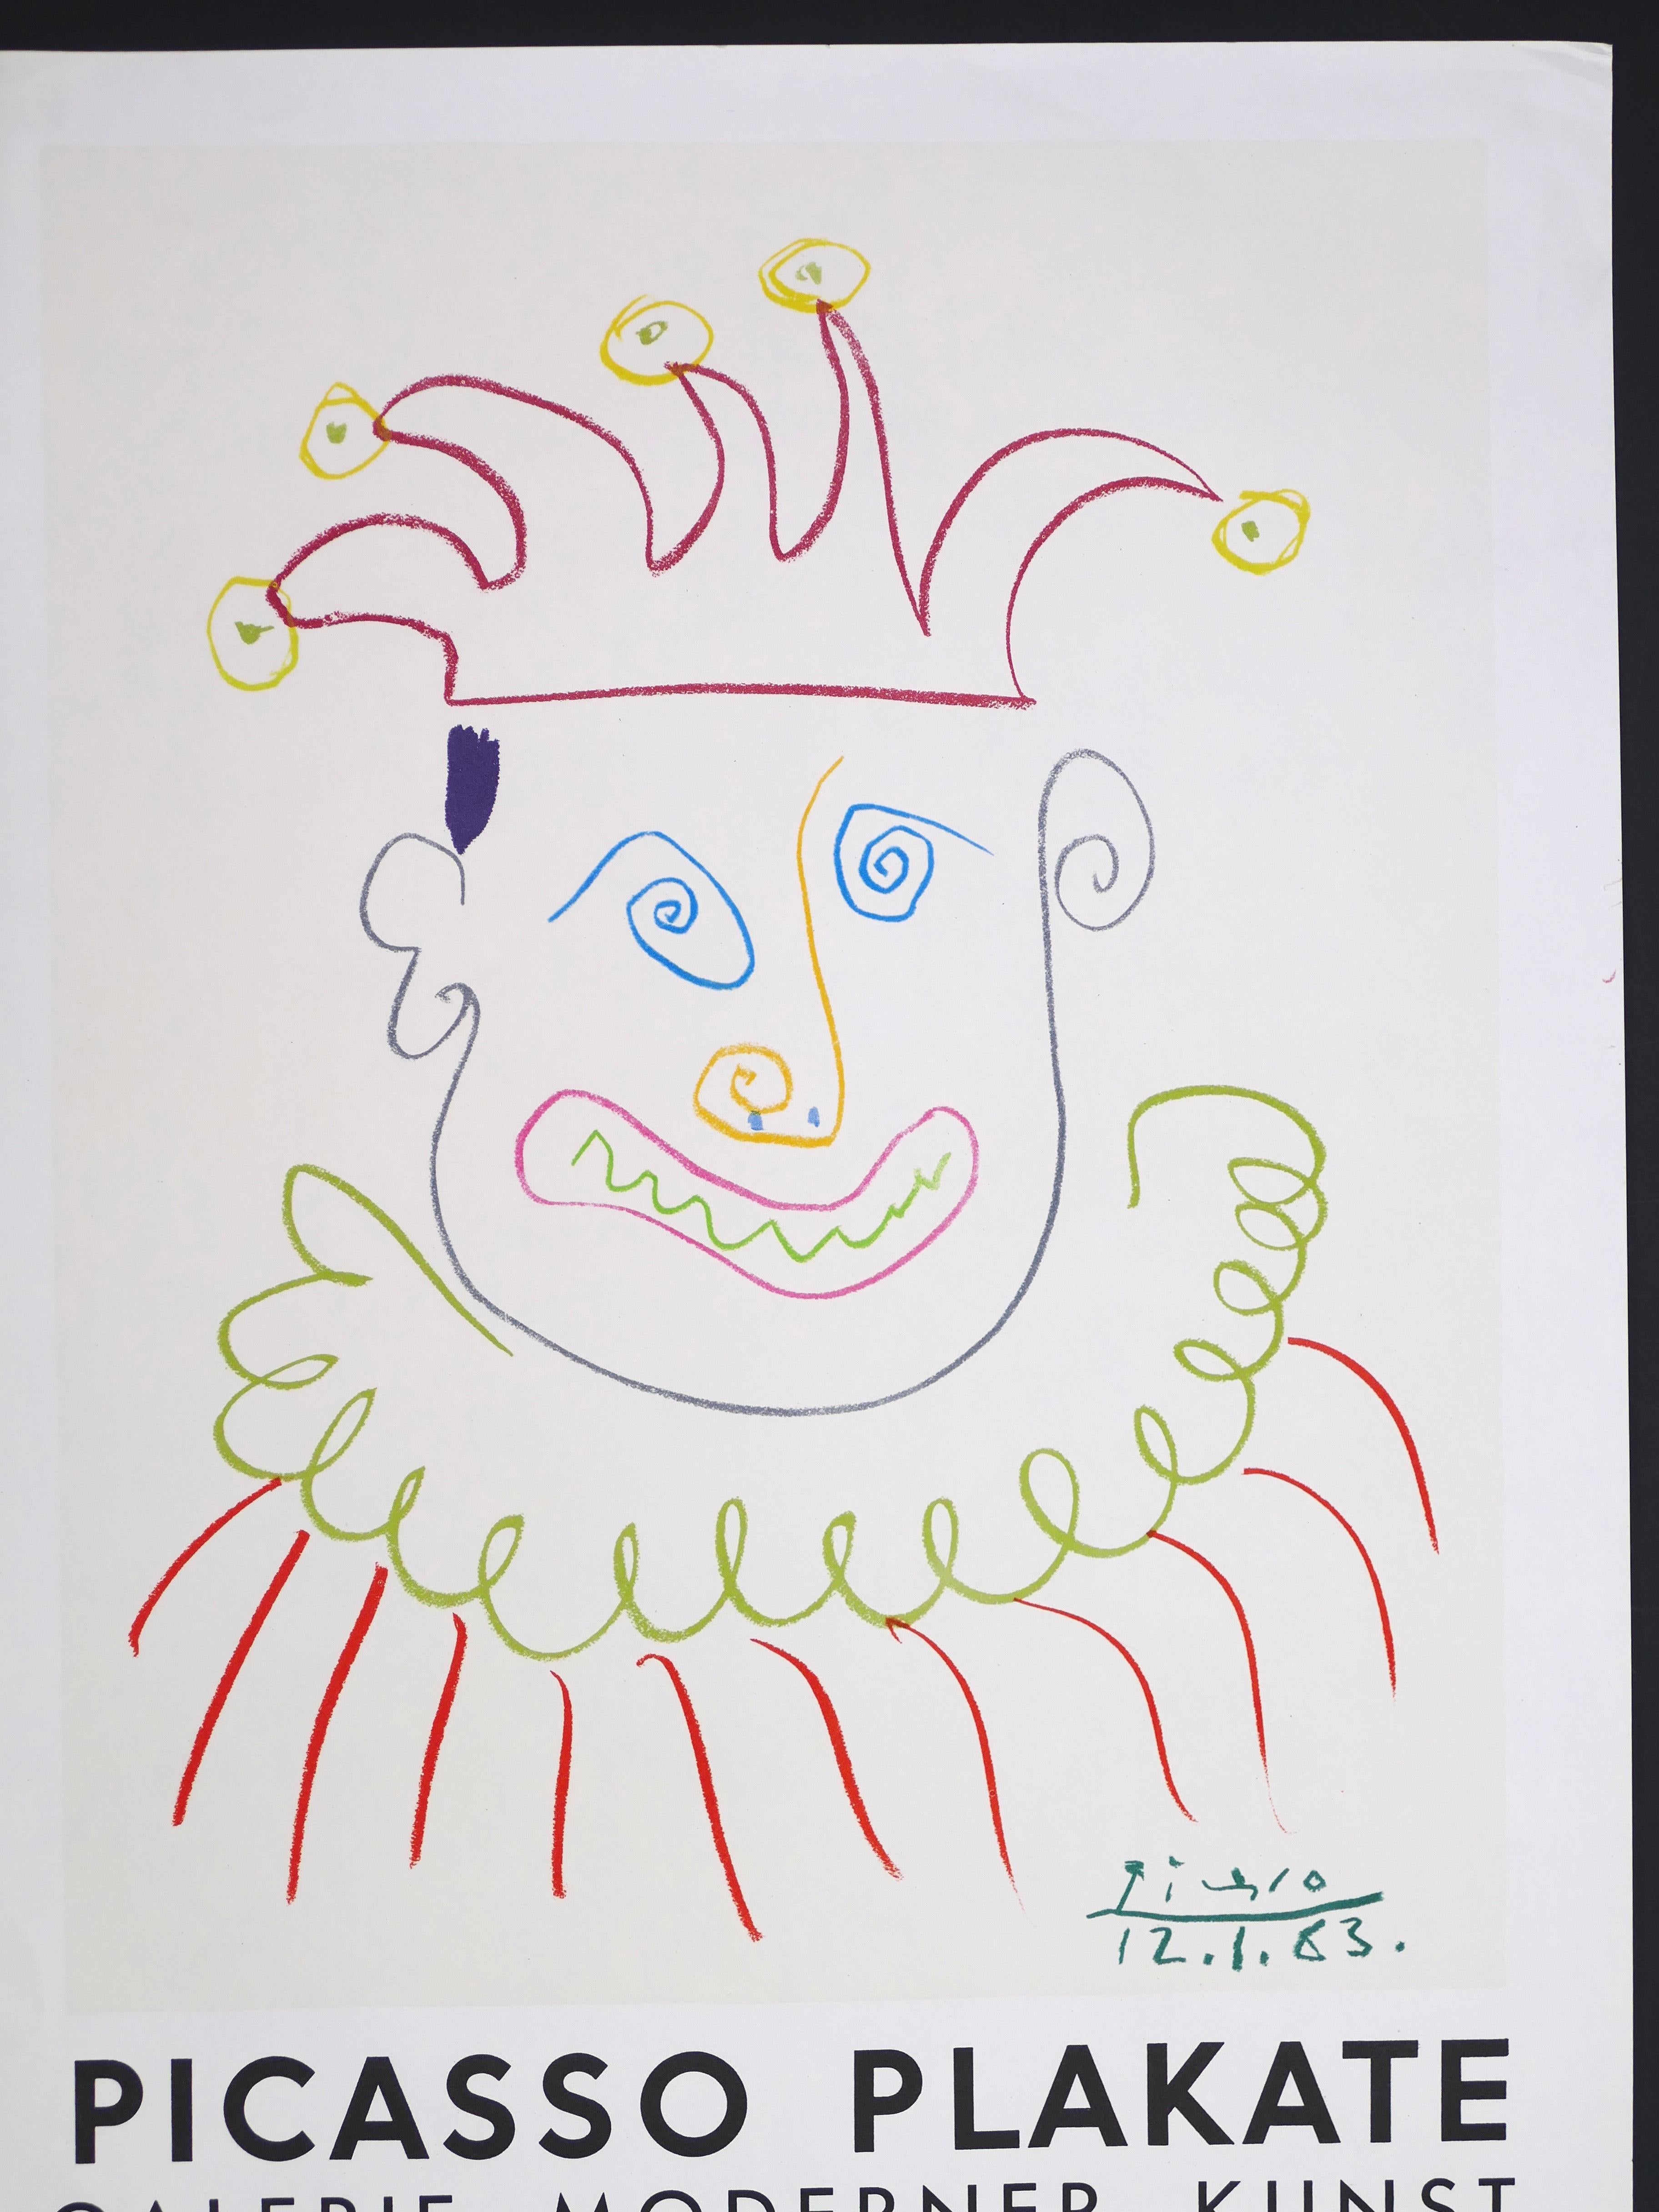 Picasso Vintage Poster Galerie Moderner Kunst der Bücherstube, Köln - 1967 - Gray Figurative Print by (after) Pablo Picasso